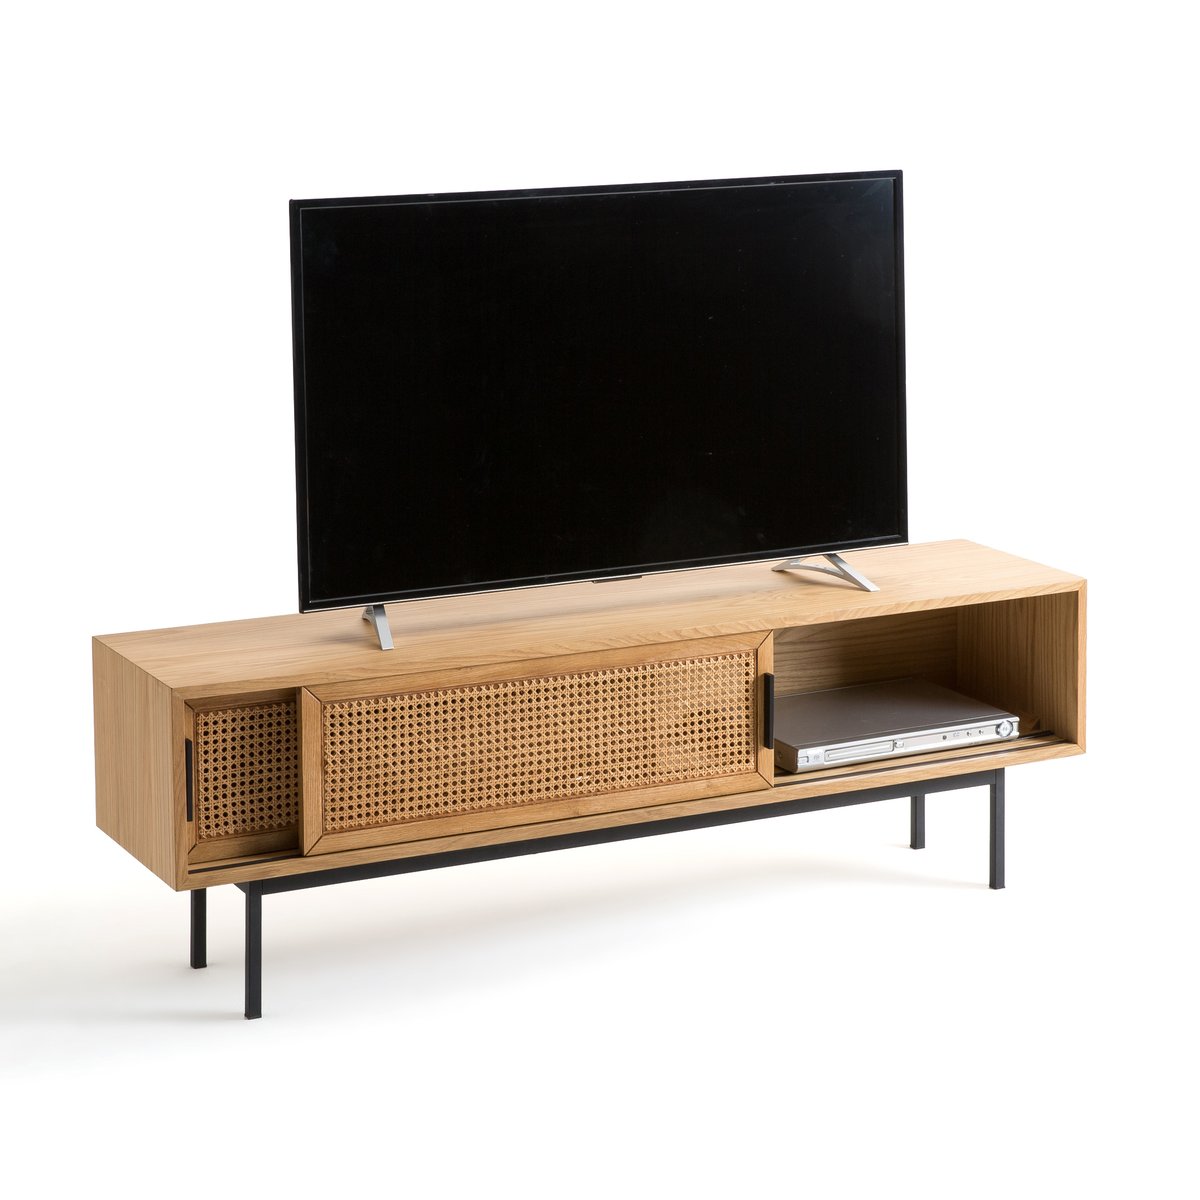 Мебель LaRedoute Для TV дуба и плетеного материала 160 см Waska единый размер каштановый - фото 3